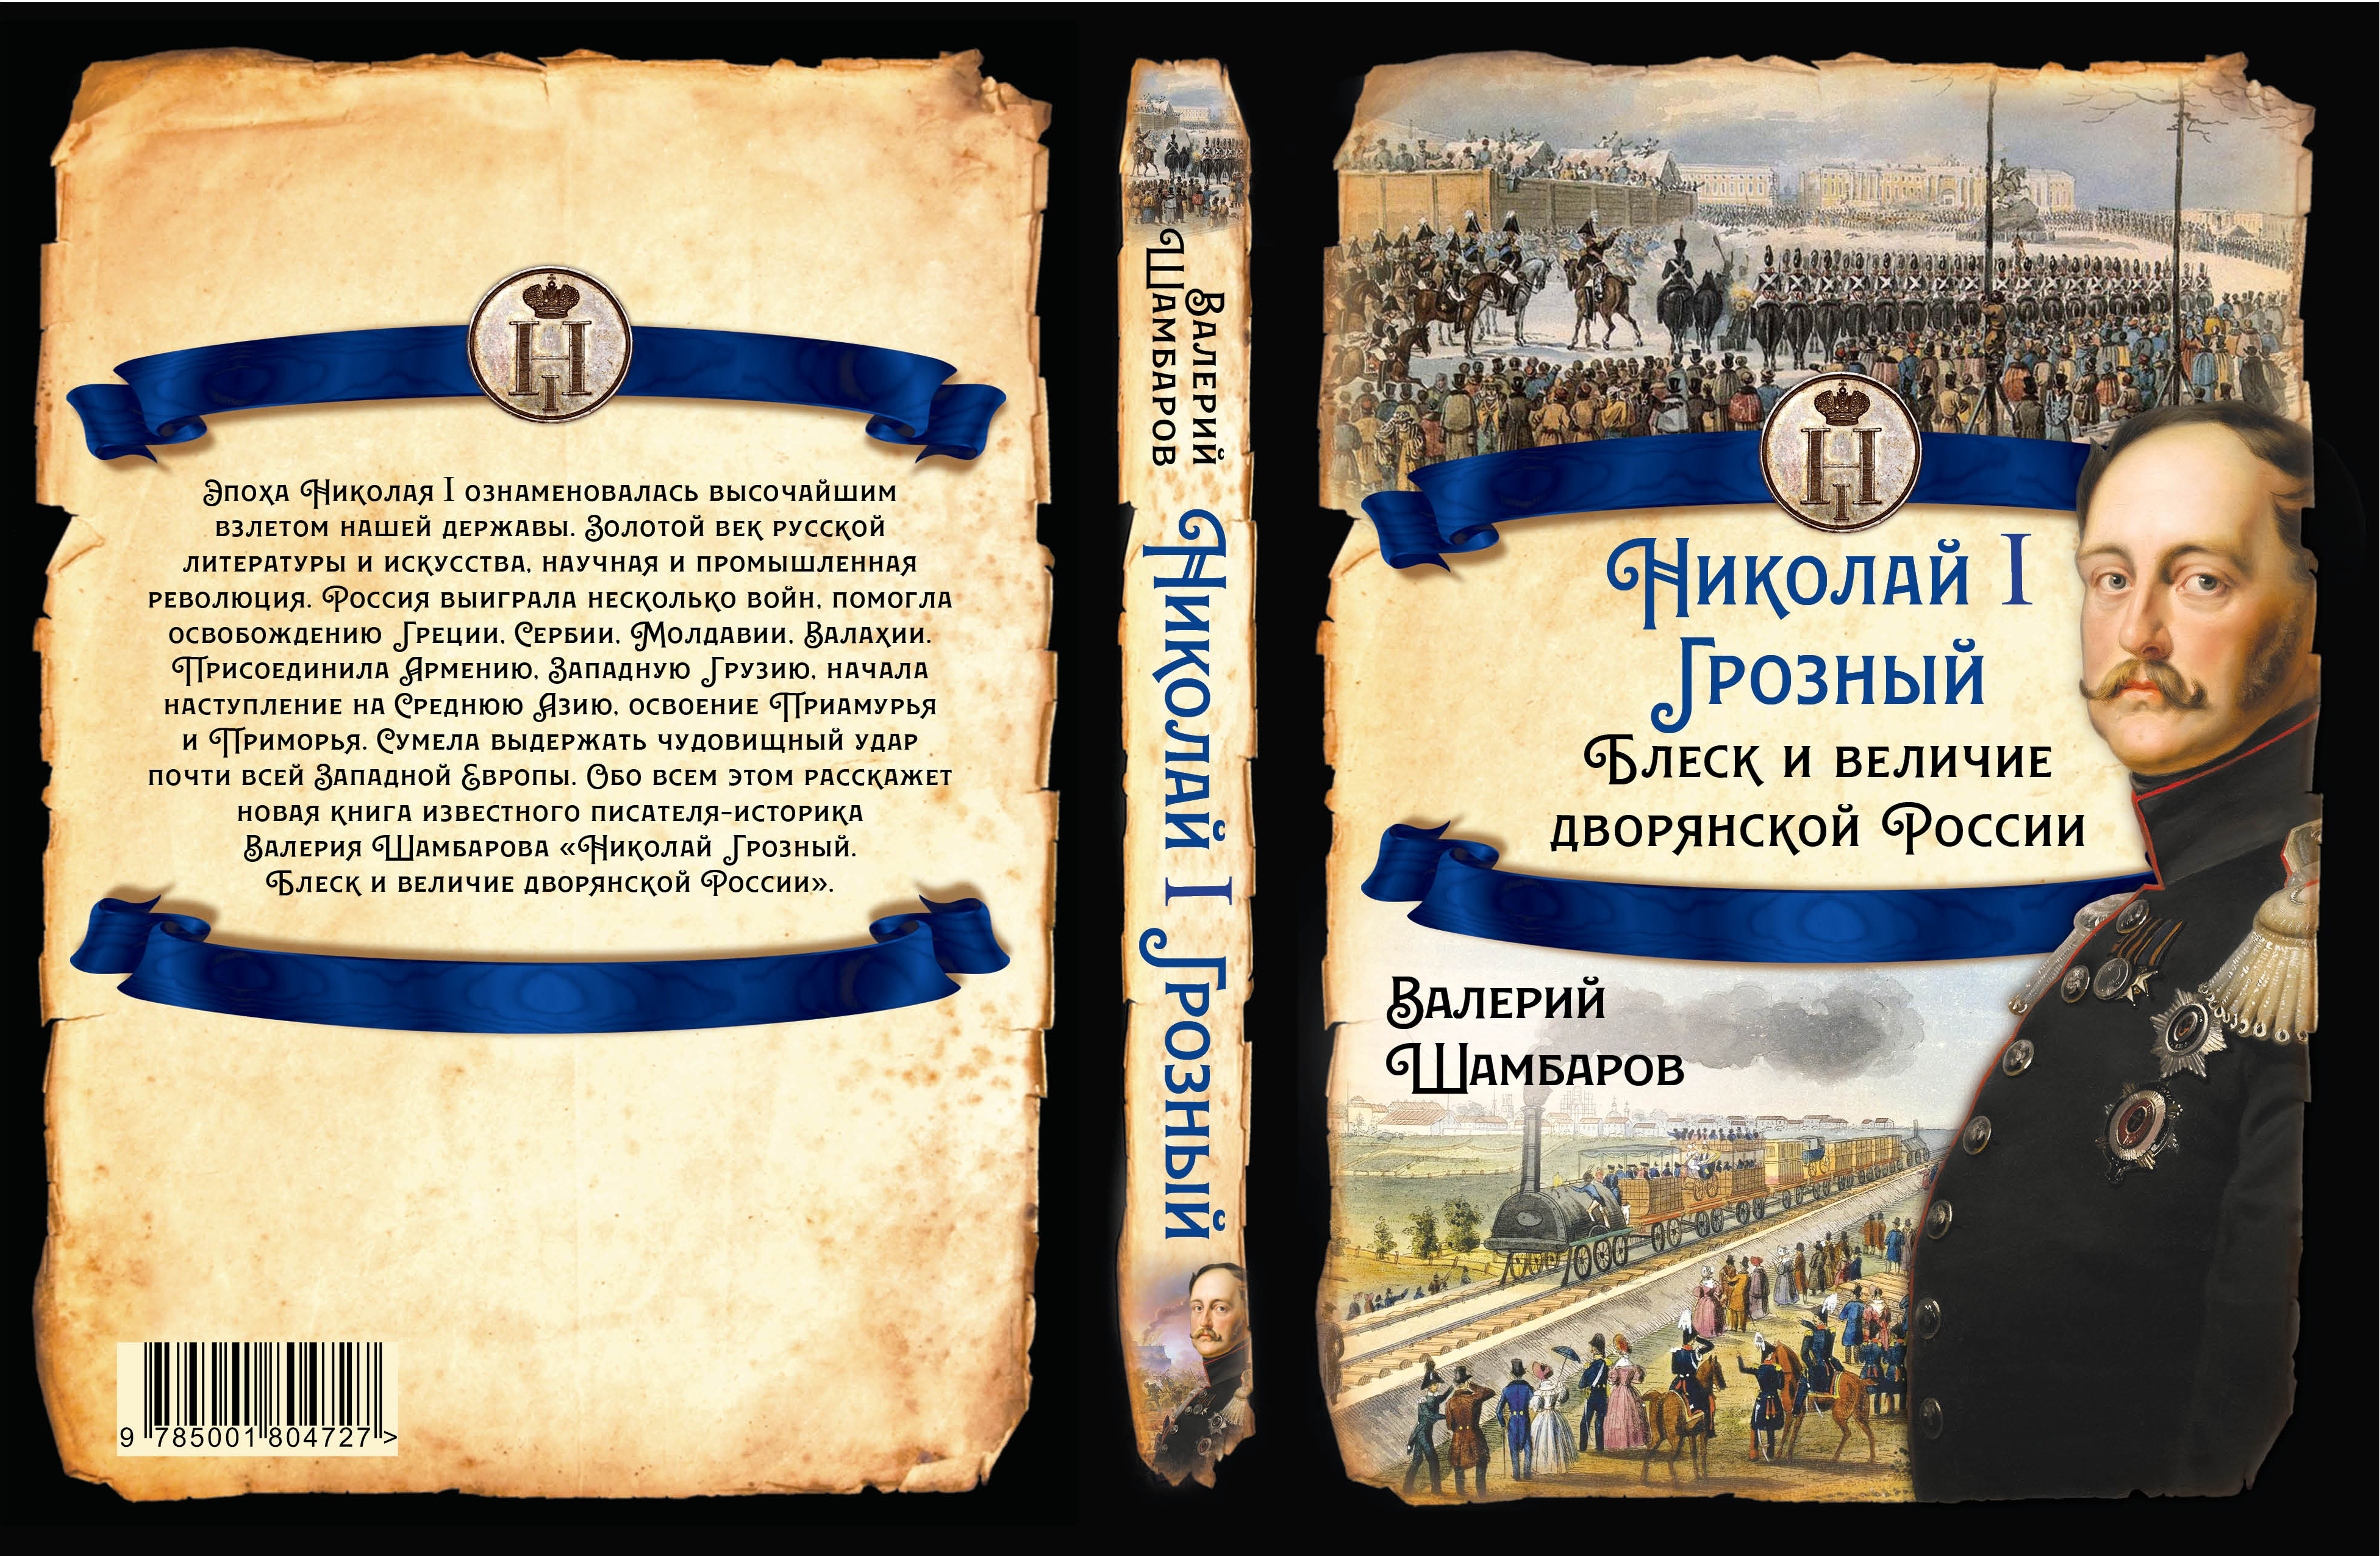 АНОНС! В свет вышла новая книга известного историка В.Е. Шамбарова "Николай Грозный"